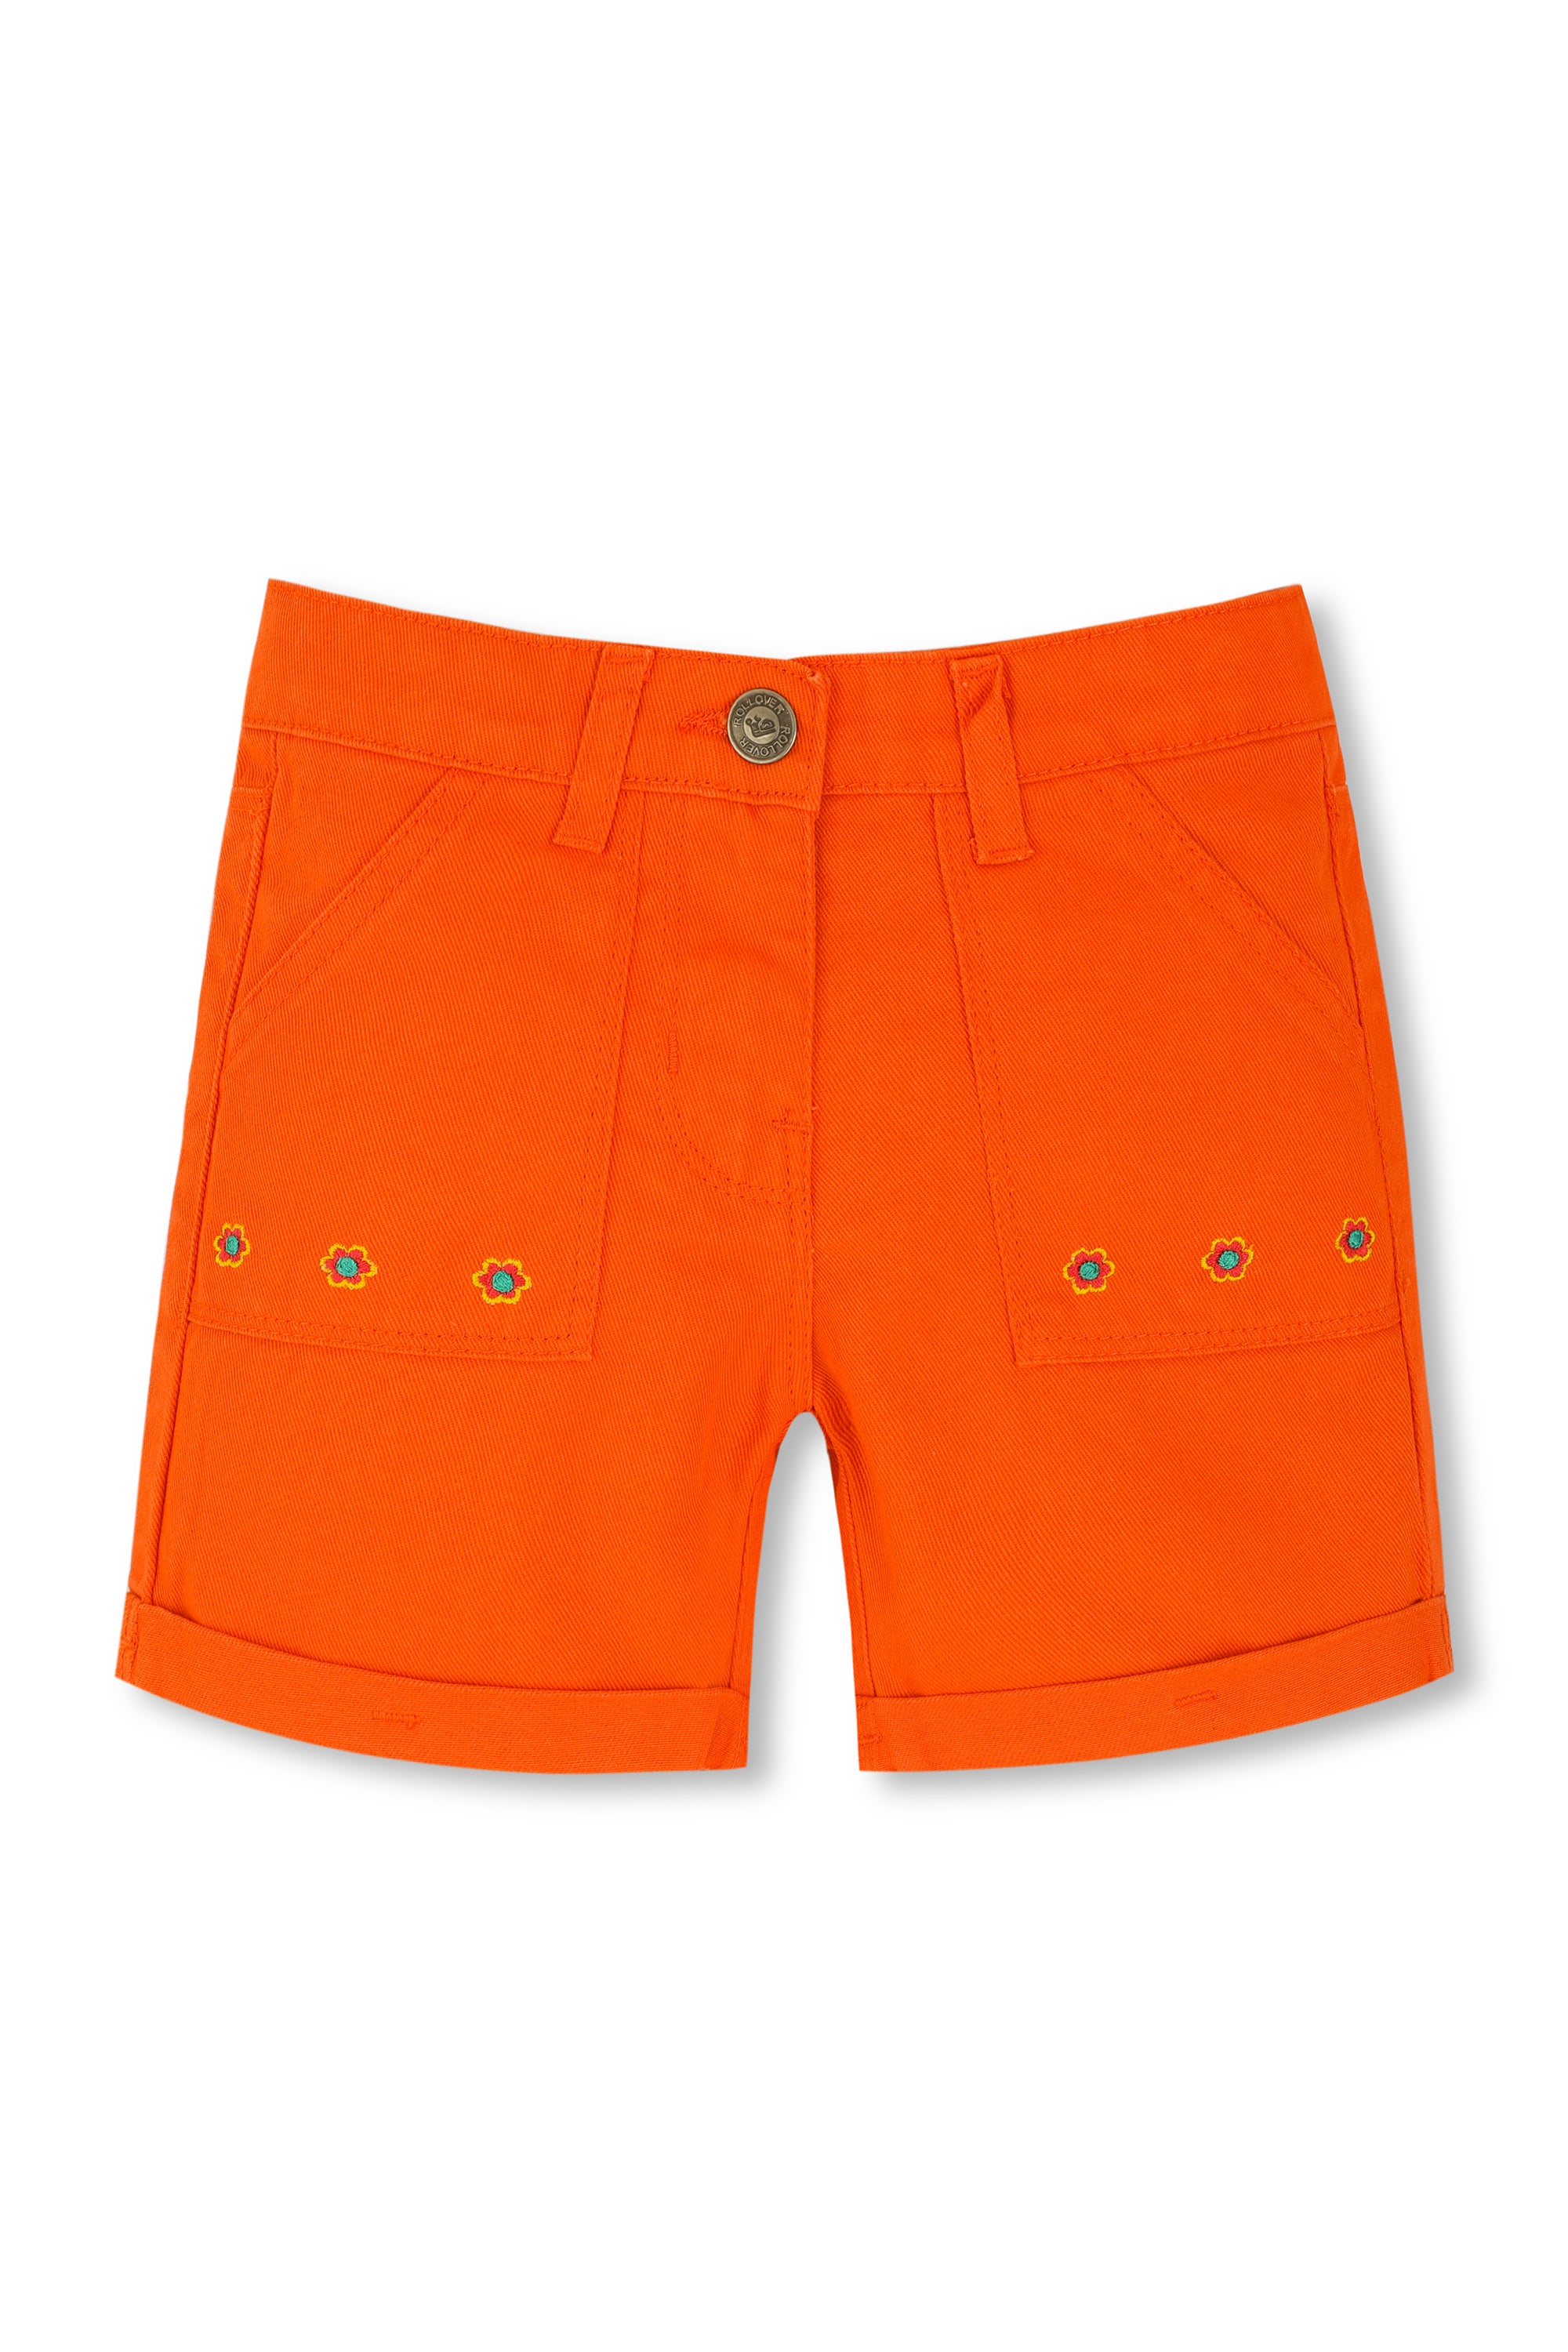 Blooming Orange Shorts